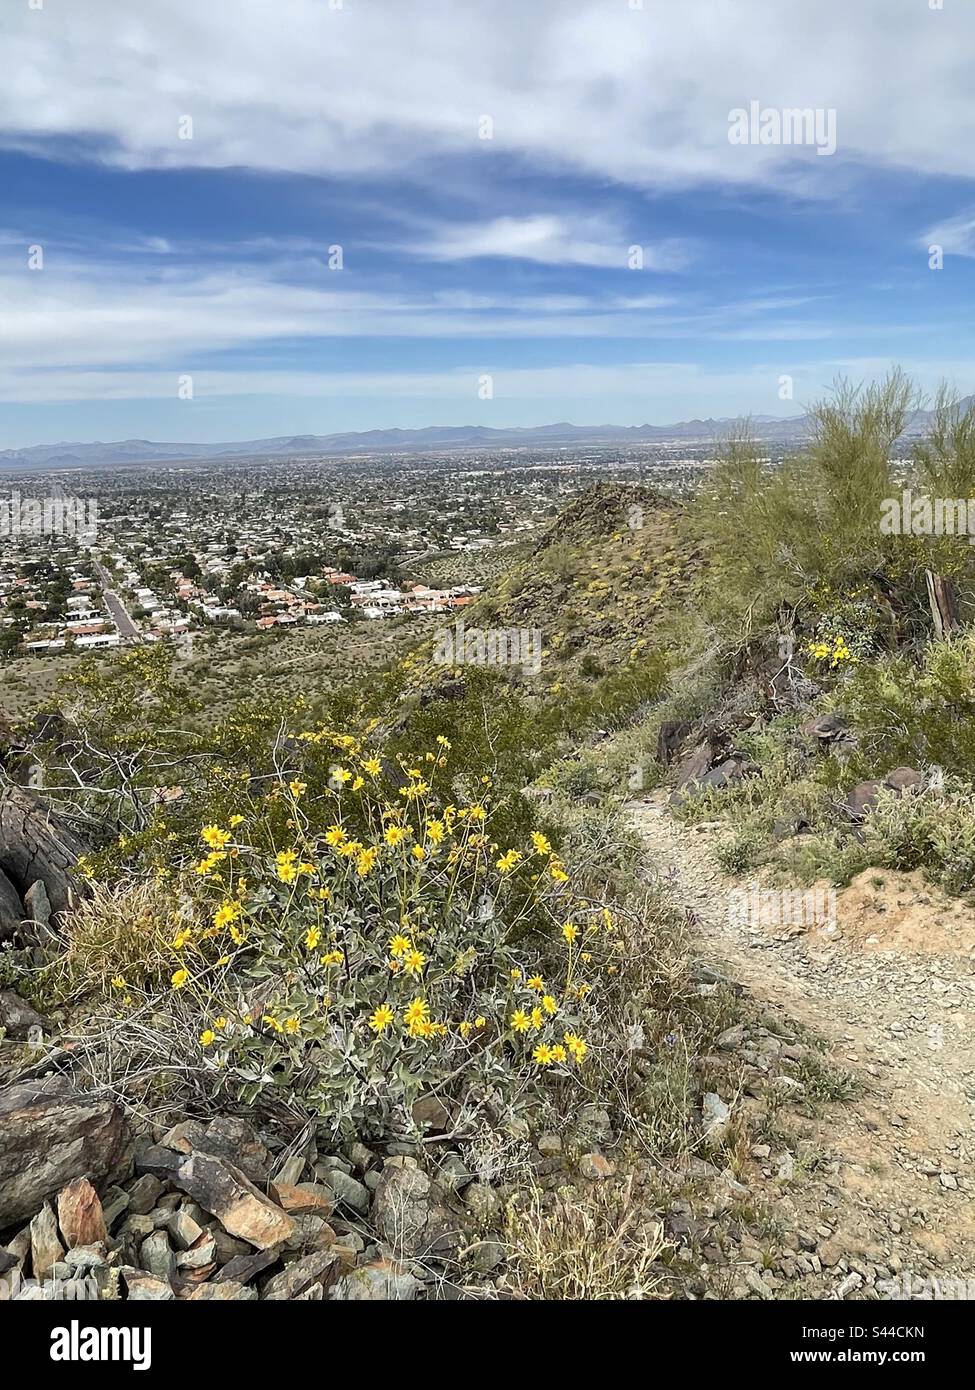 Réserve des montagnes de Phoenix, 32nd rues de route, banlieue nord de Phoenix, buissons créosotes jaunes, buissons cassants à fleurs jaunes, désert de Sonoran, Arizona Banque D'Images